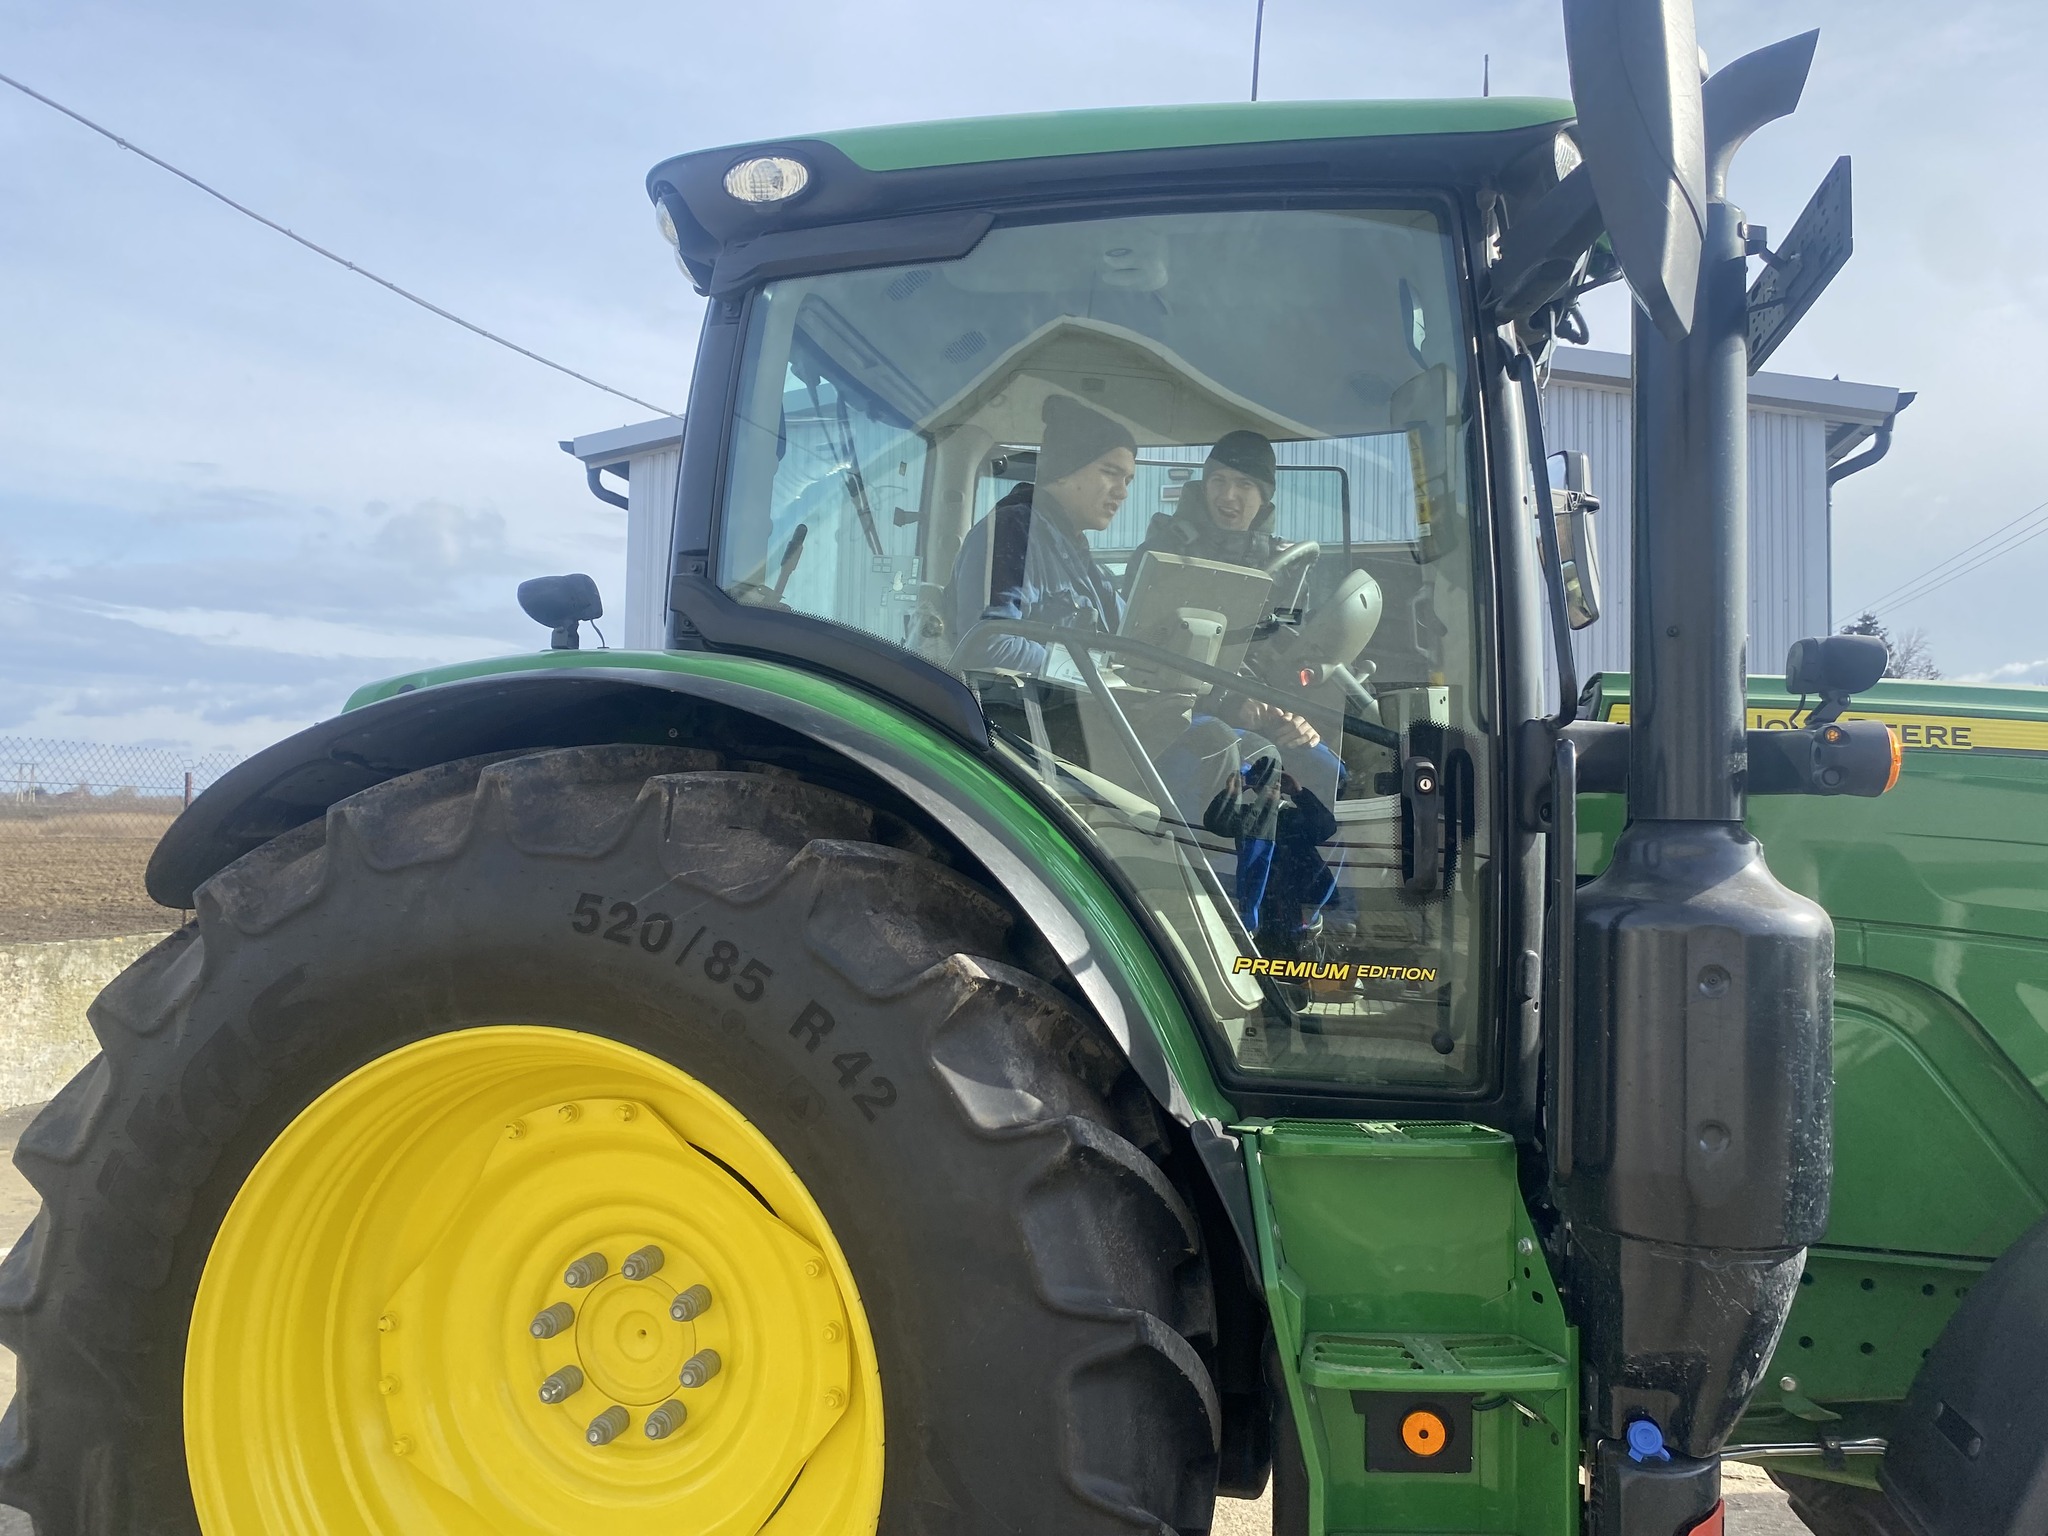 Két ember ül egy zöld traktor vezetőfülkéjében egy farmon. Mosolyognak és beszélgetnek. A traktor nagy, sárga kerekekkel rendelkezik, és egy épület közelében parkol, részben felhős égbolt alatt. A jelenet azt sugallja, hogy vagy vezetni tanulnak, vagy mezőgazdasági munkára készülnek.